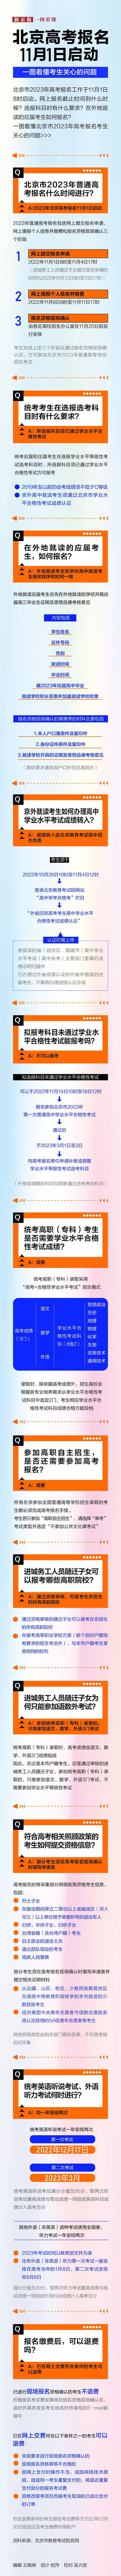 北京高考报名11月1日启动 一图看懂考生关心的问题